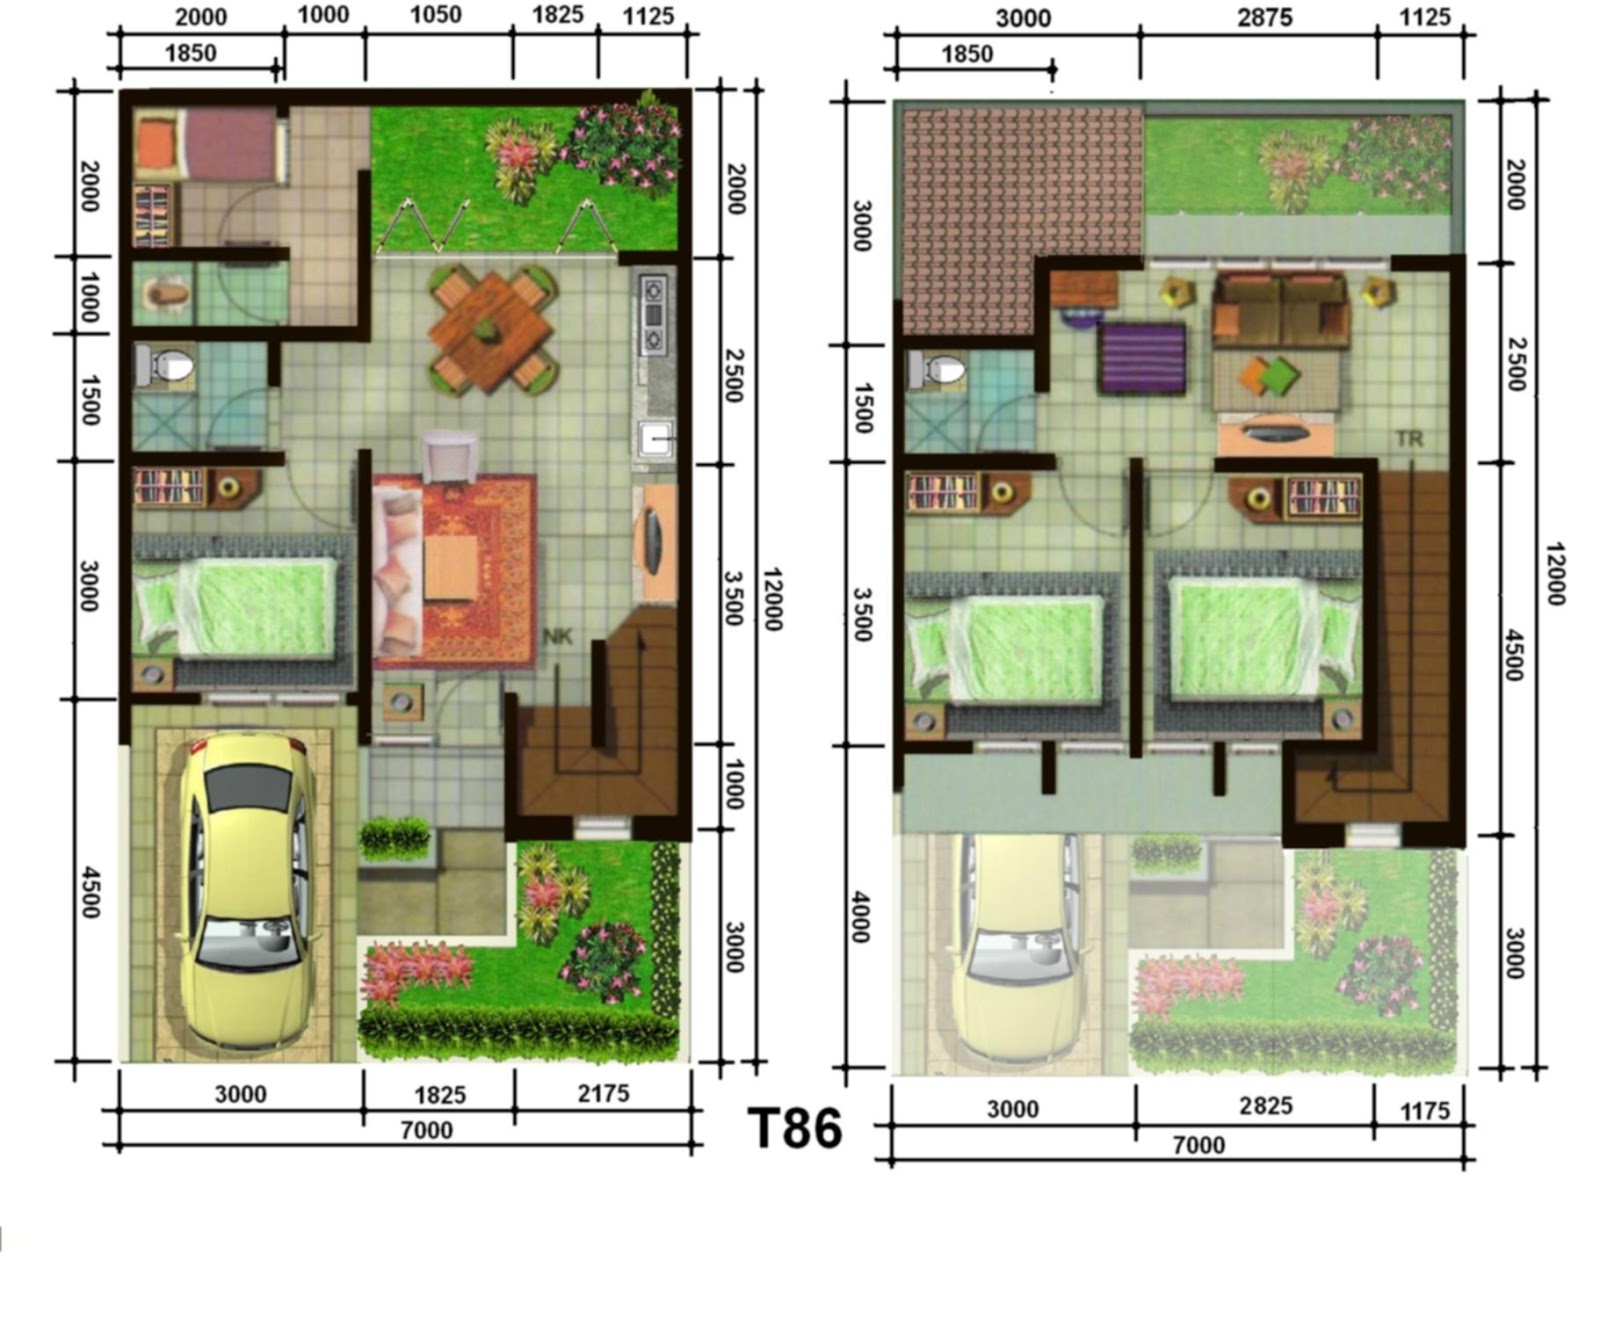 Plan Lantai Rumah 2 Tingkat Design Rumah Terkini